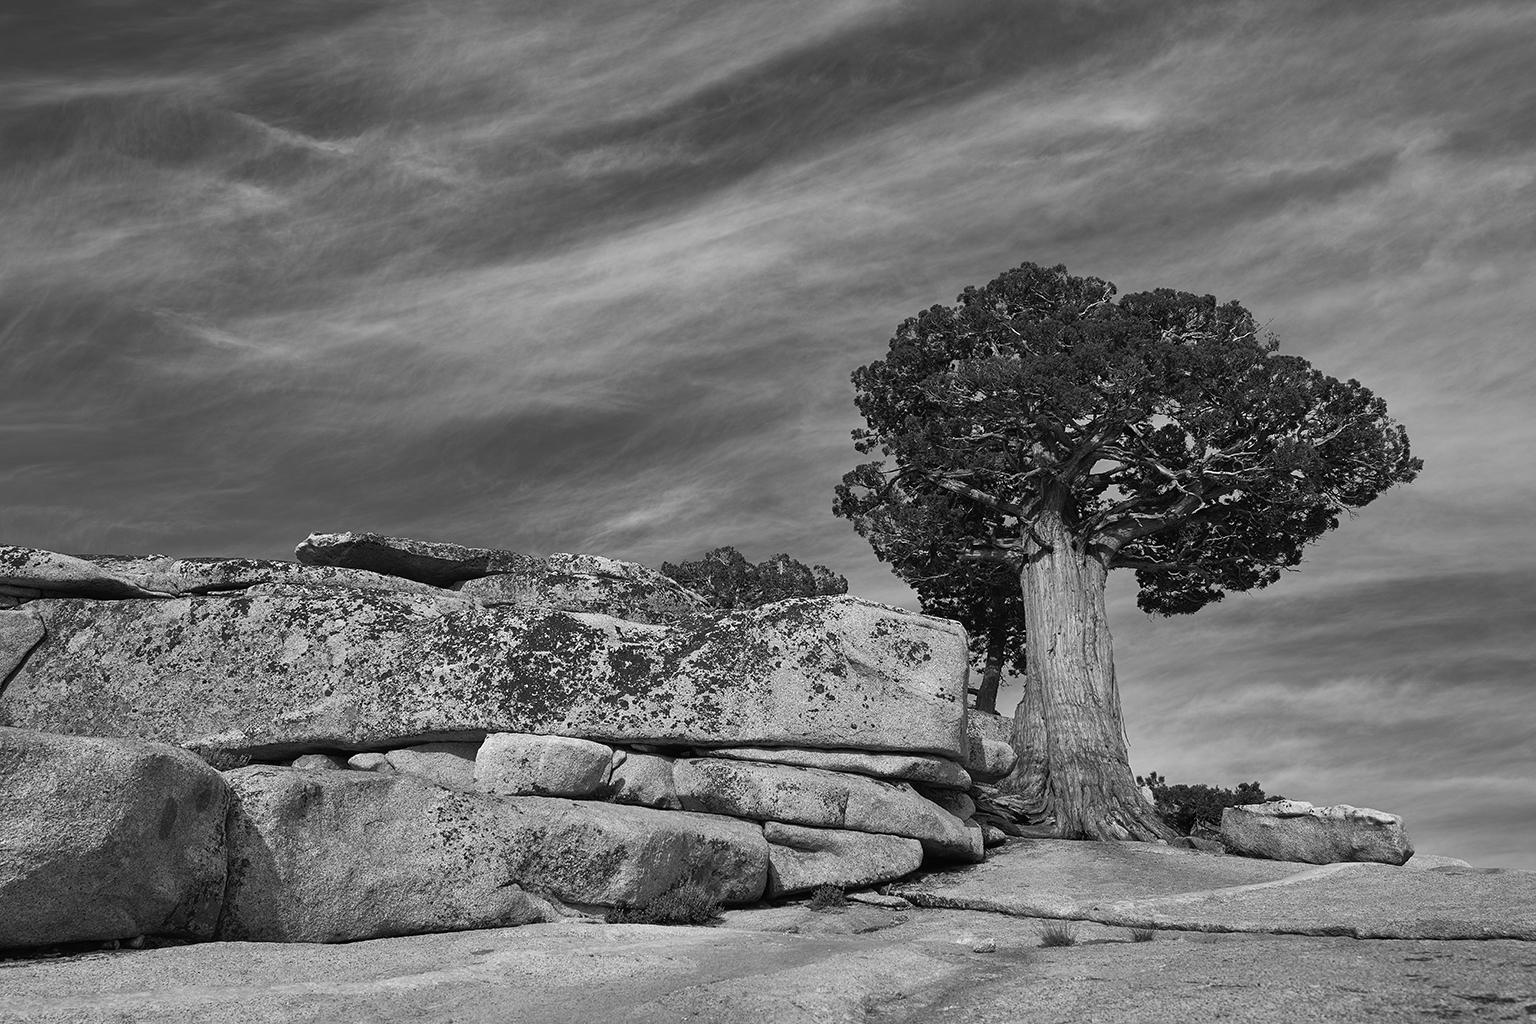 Tree Study IV – Großformatige b/w-Fotografie eines einsamen antiken Baumes in Landschaft (Zeitgenössisch), Photograph, von Frank Schott